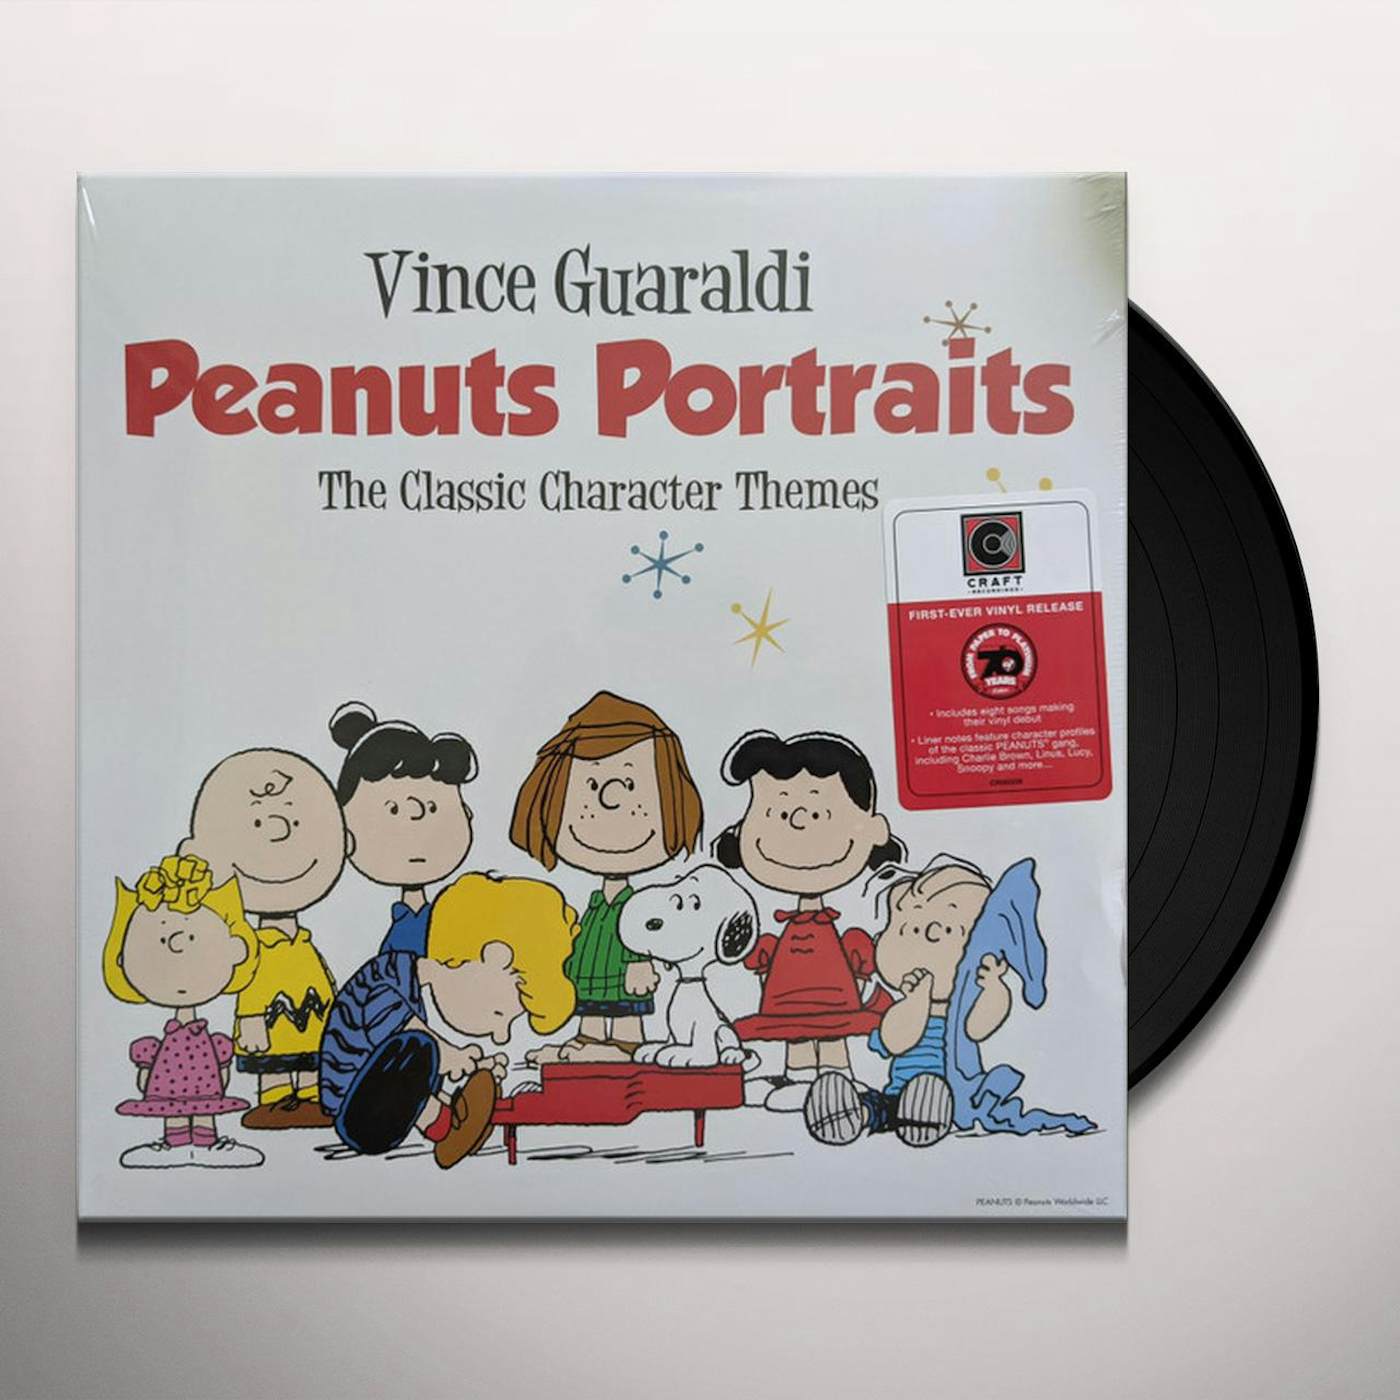 Vince Guaraldi Peanuts Portraits Vinyl Record